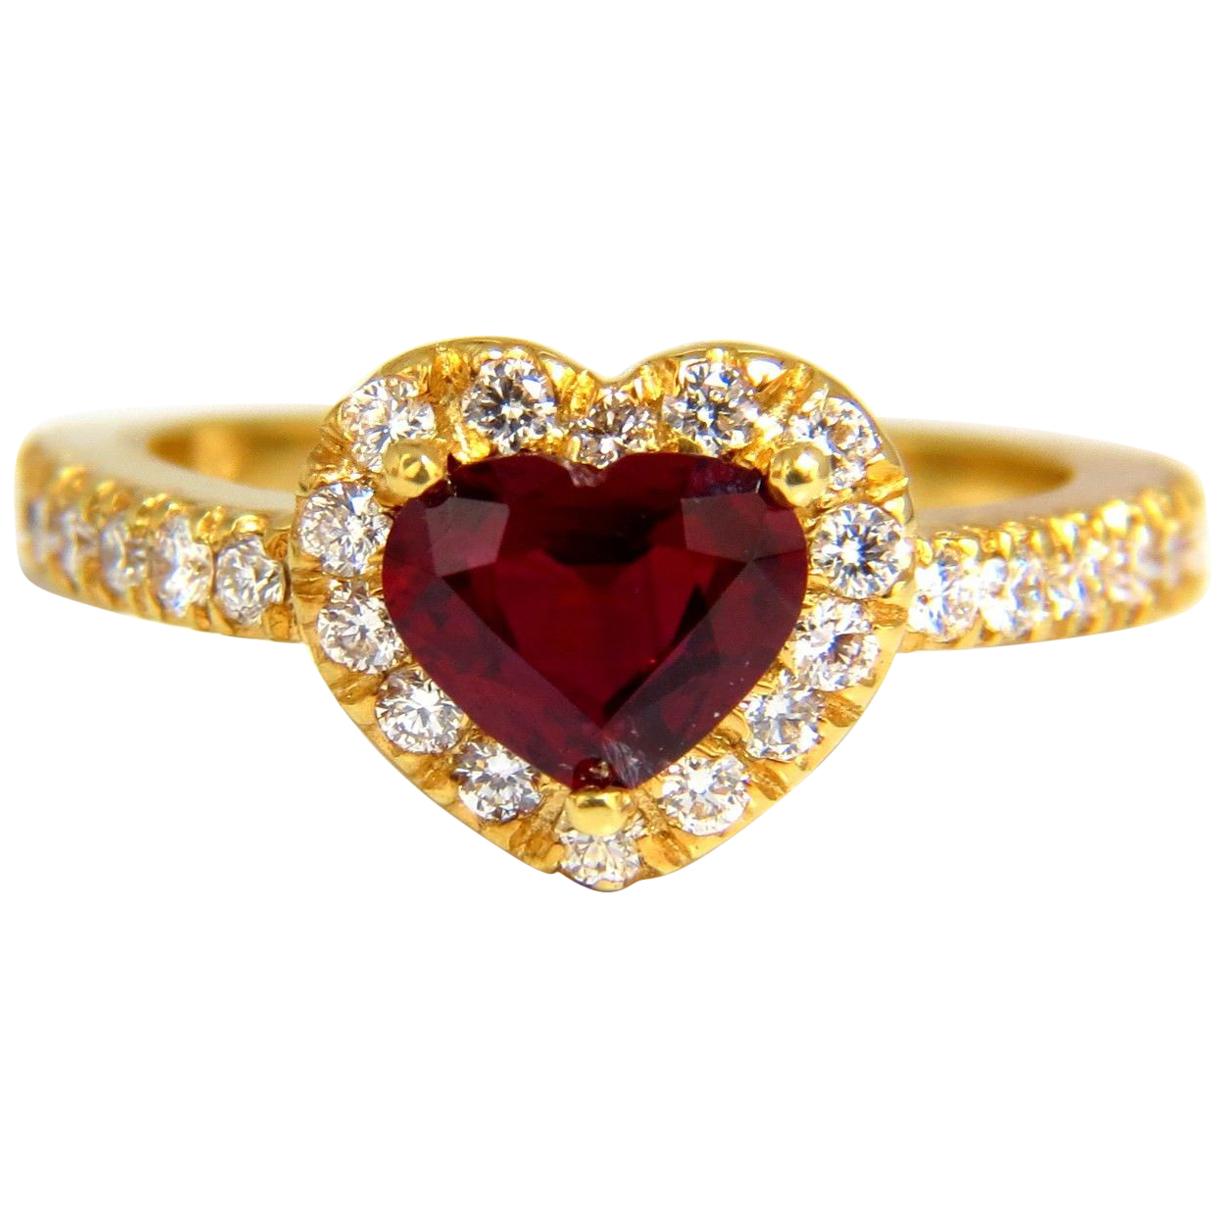 Bague 14 carats avec diamants et rubis naturel taille cœur de 1,62 carat certifié GIL